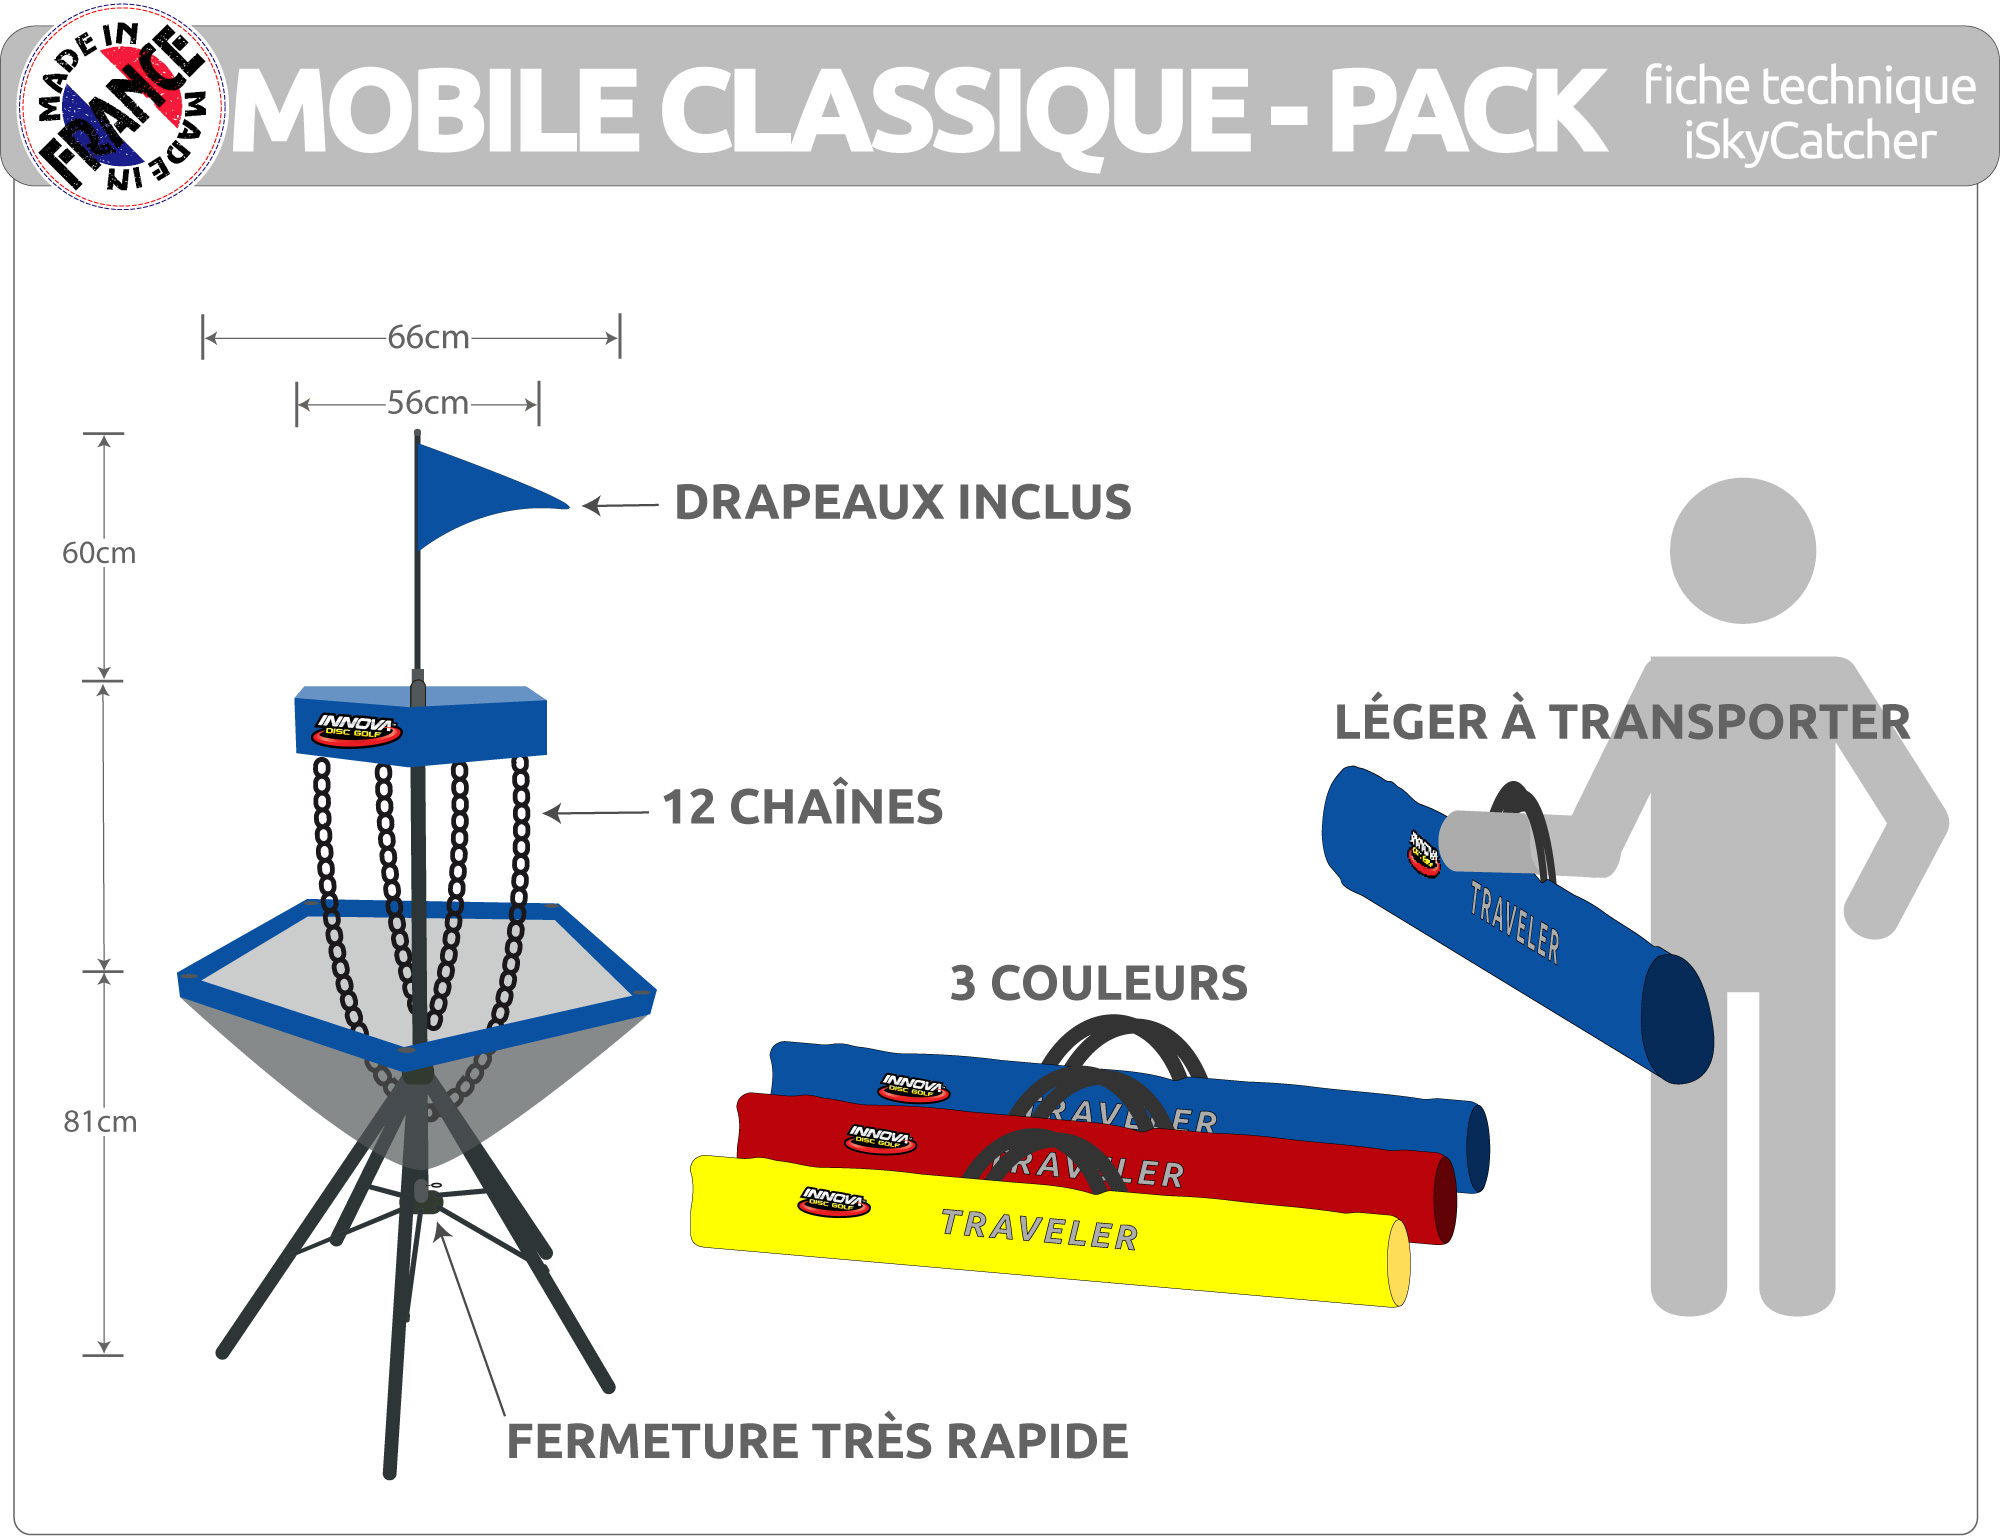 MobileClassique-Fiche-b.jpg